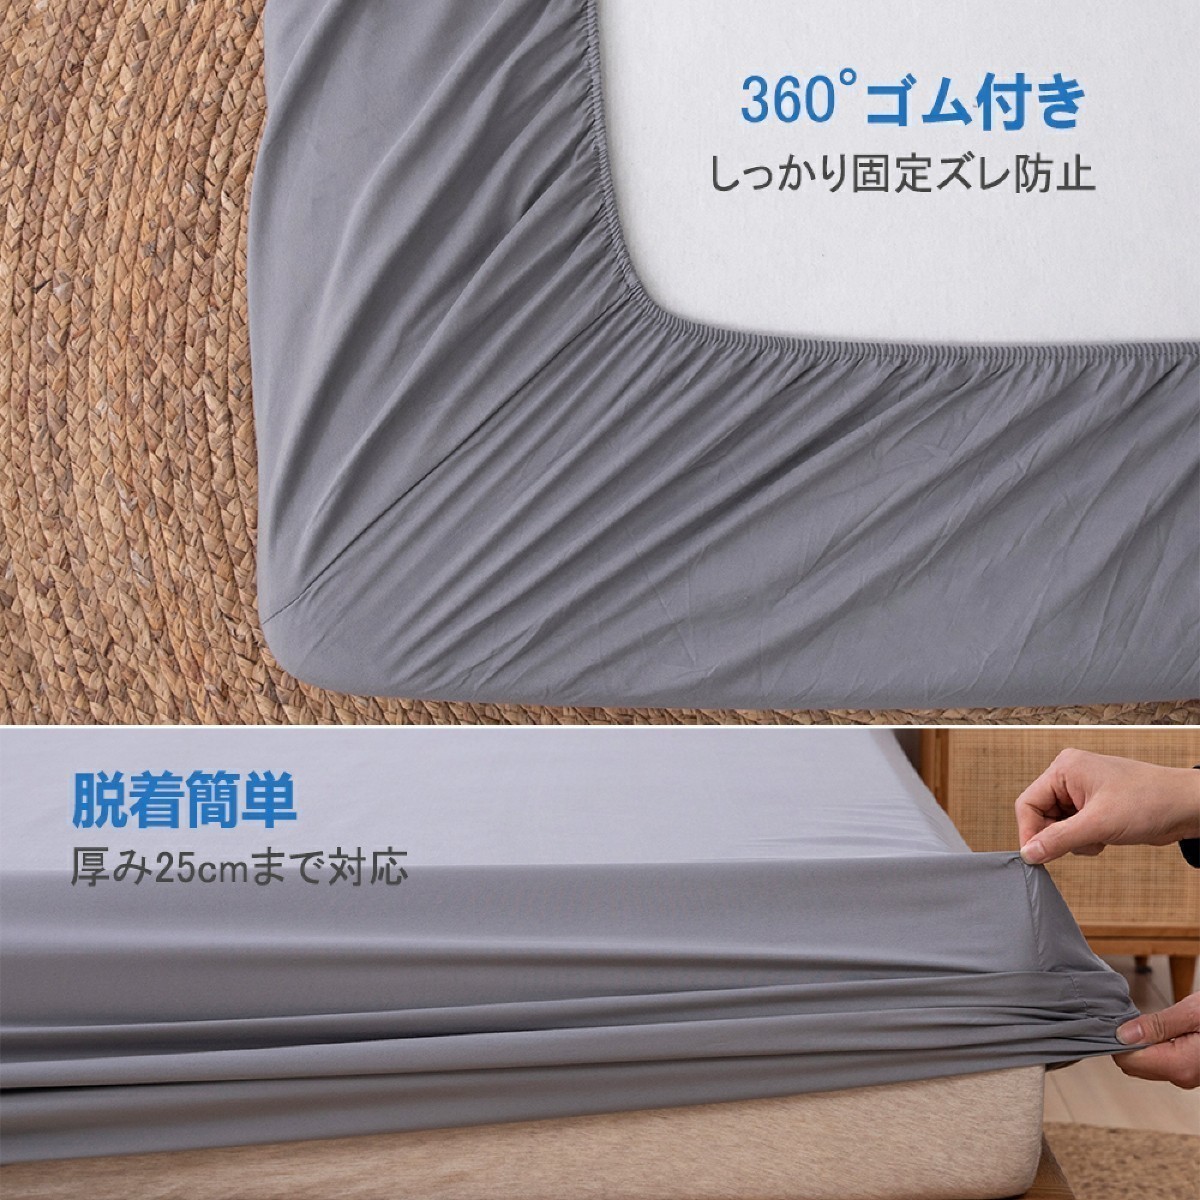  box простыня простыня матрац покрытие покрывало bed простыня европейский * японский стиль двоякое применение 4 сезон обращение ( двойной *140×200cm* темно-серый )